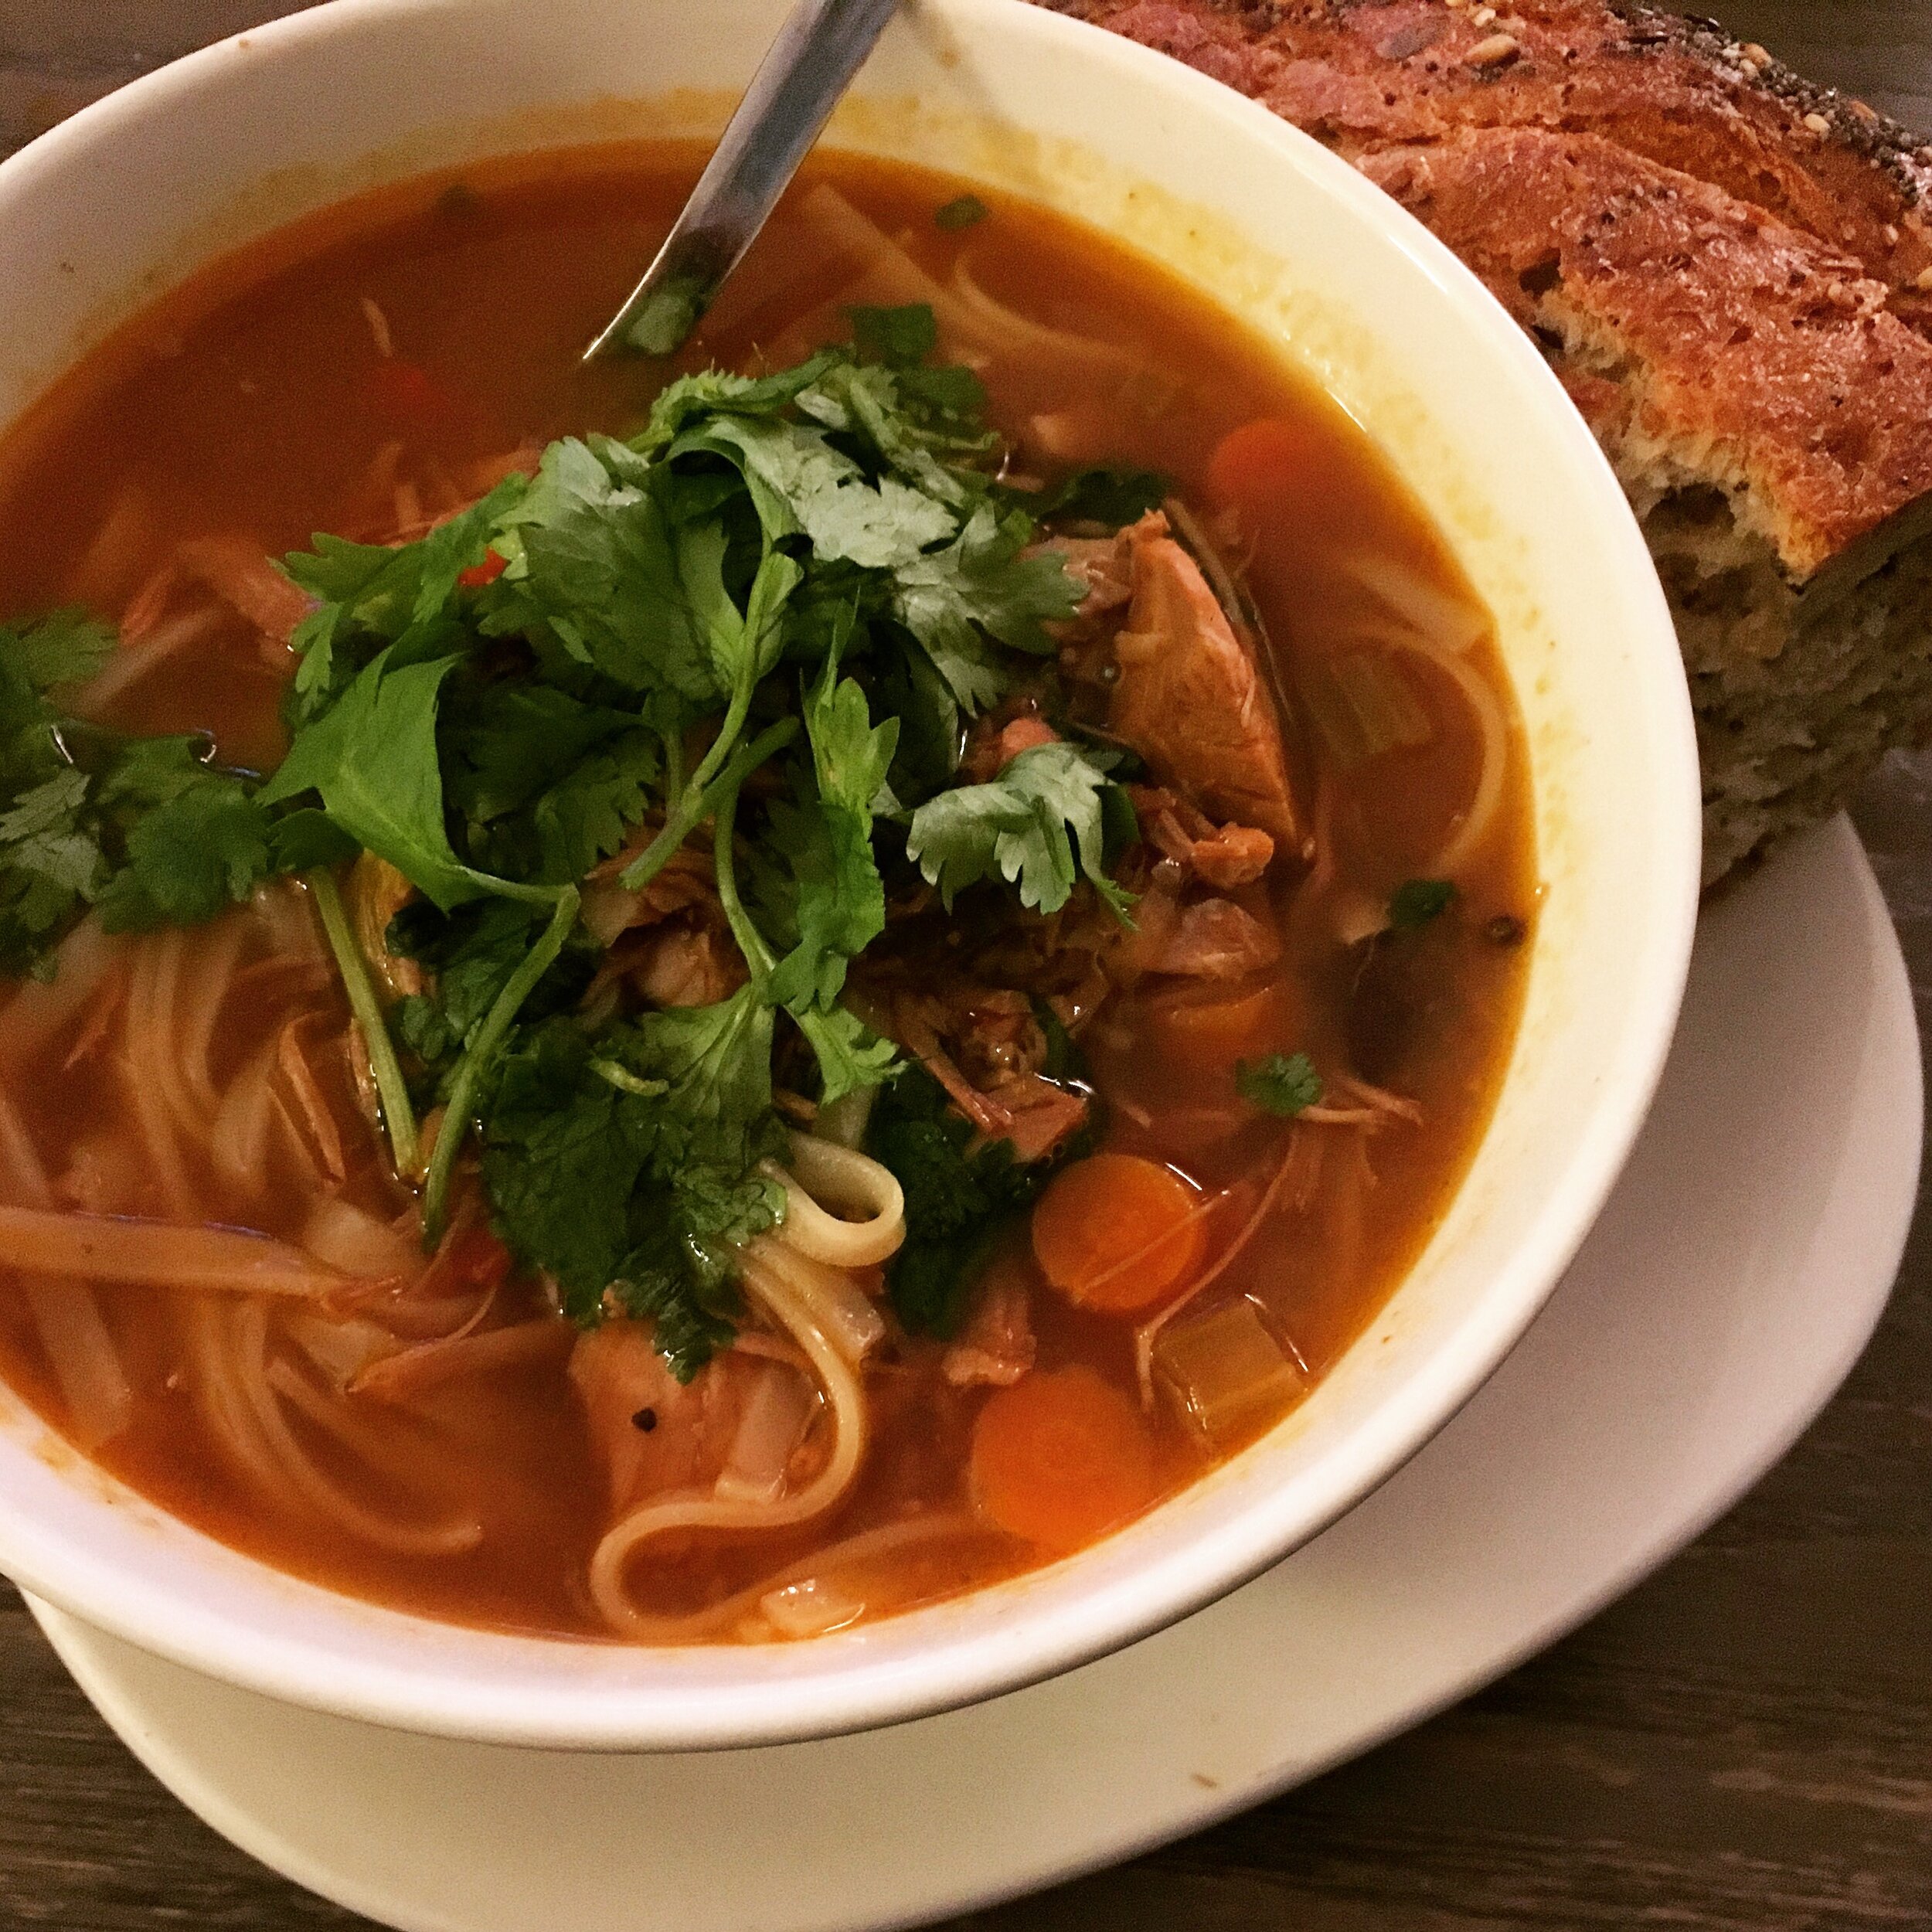 Spicy Asian noodle soup